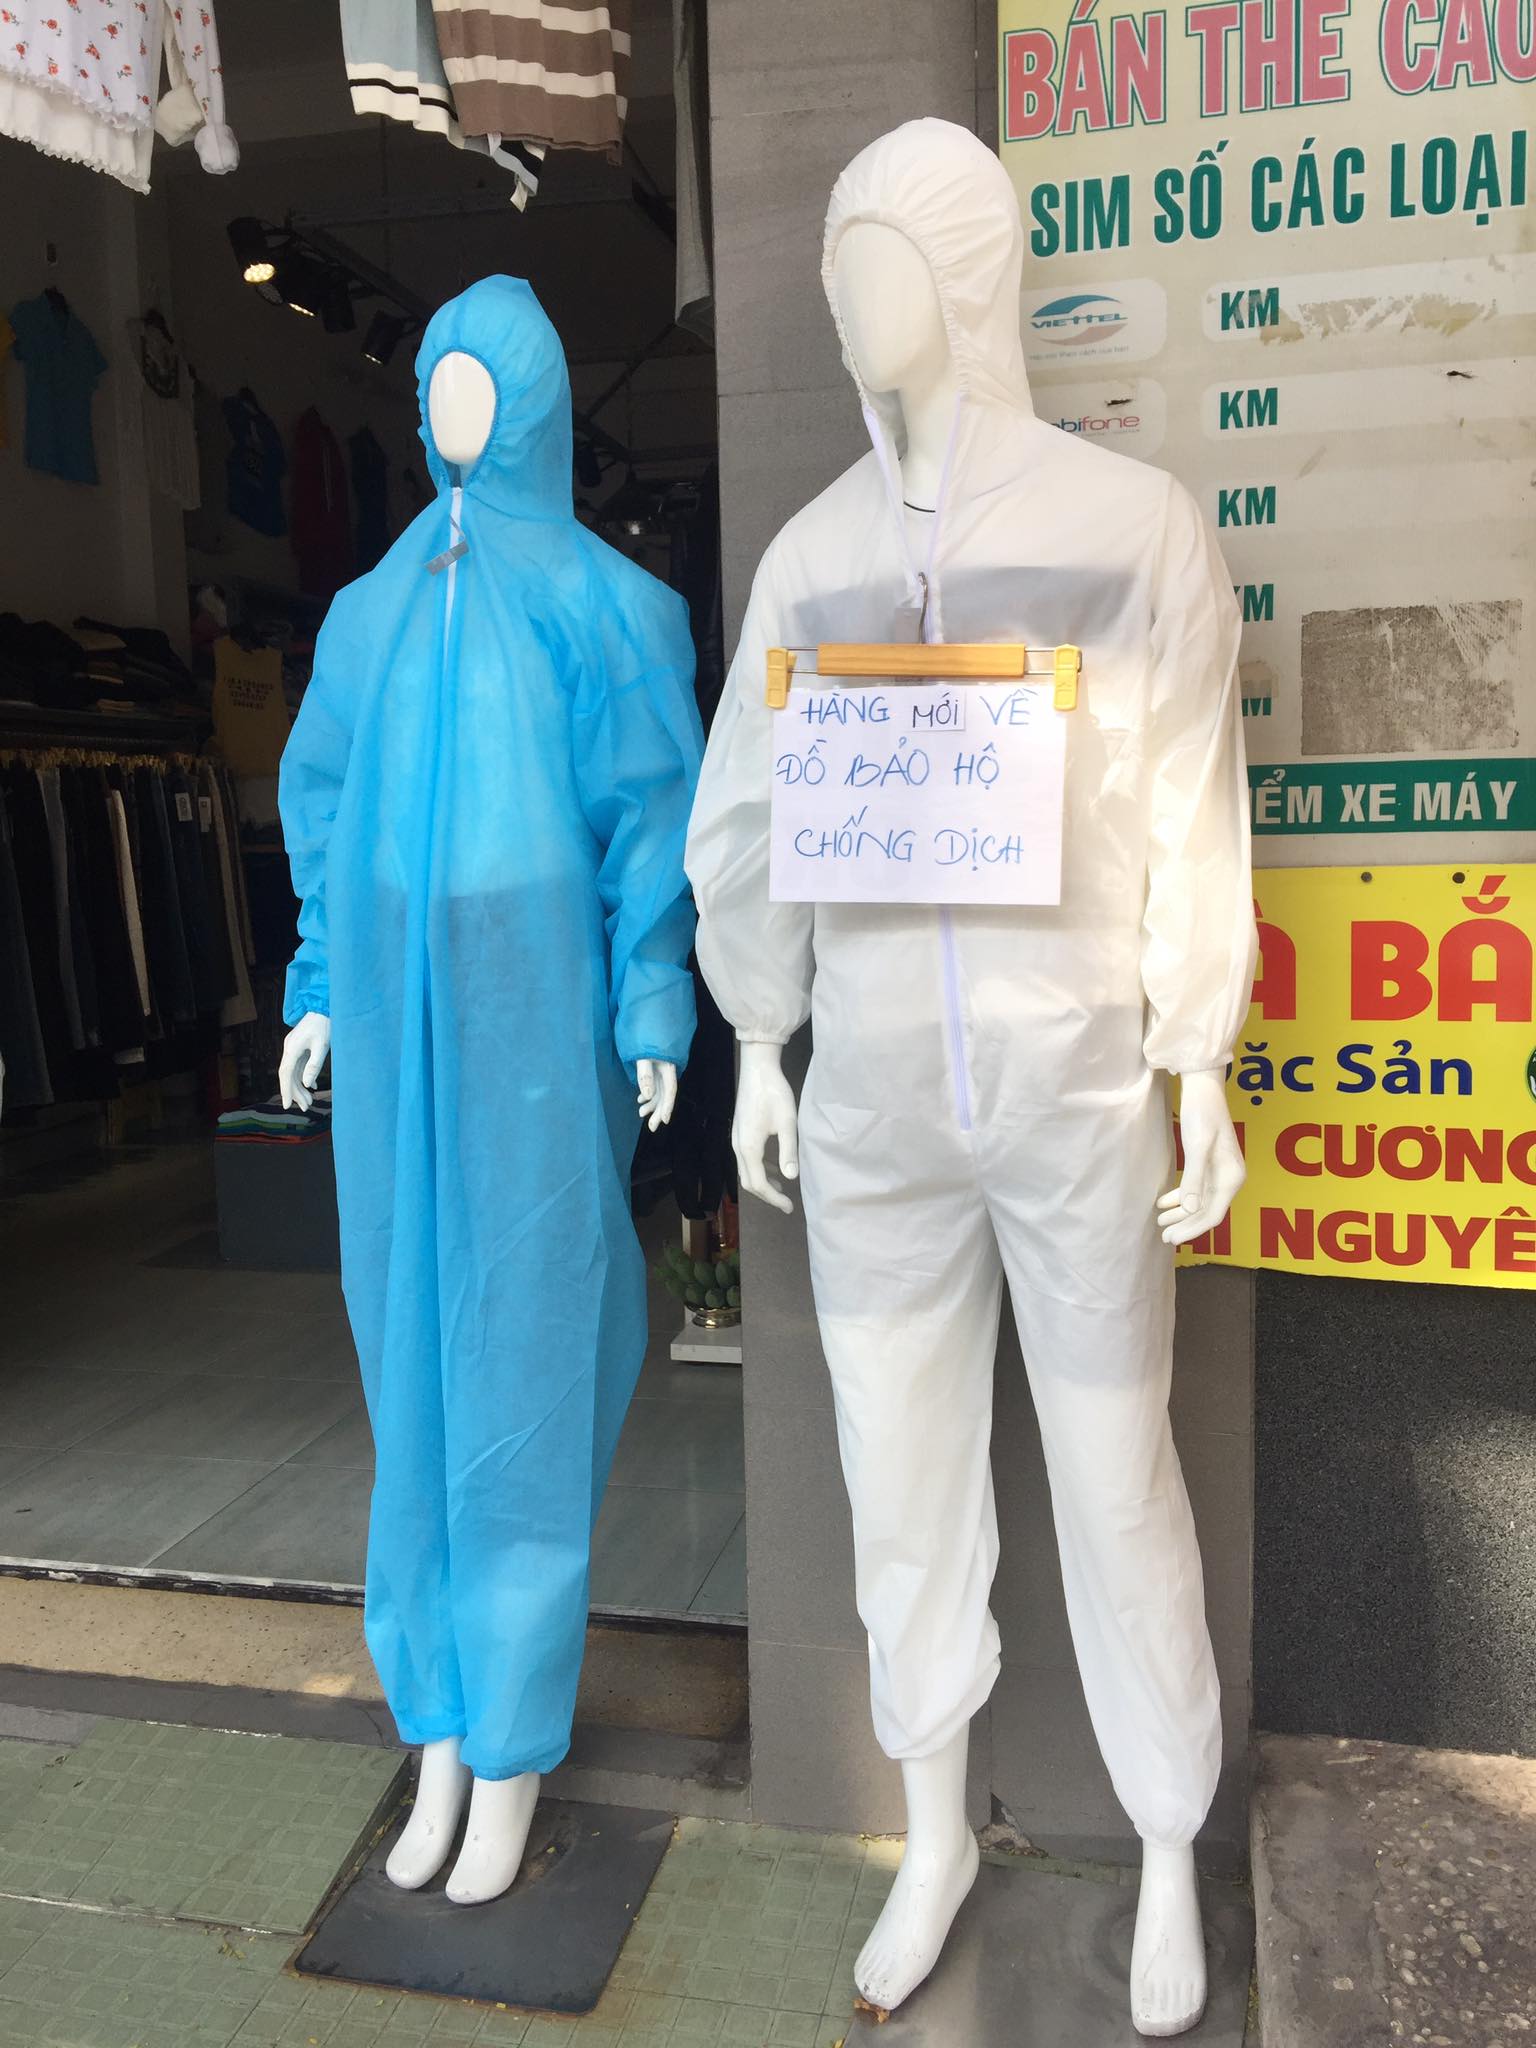 Một shop thời trang tại quận Tân Bình quảng cáo đồ bảo hộ chống dịch.